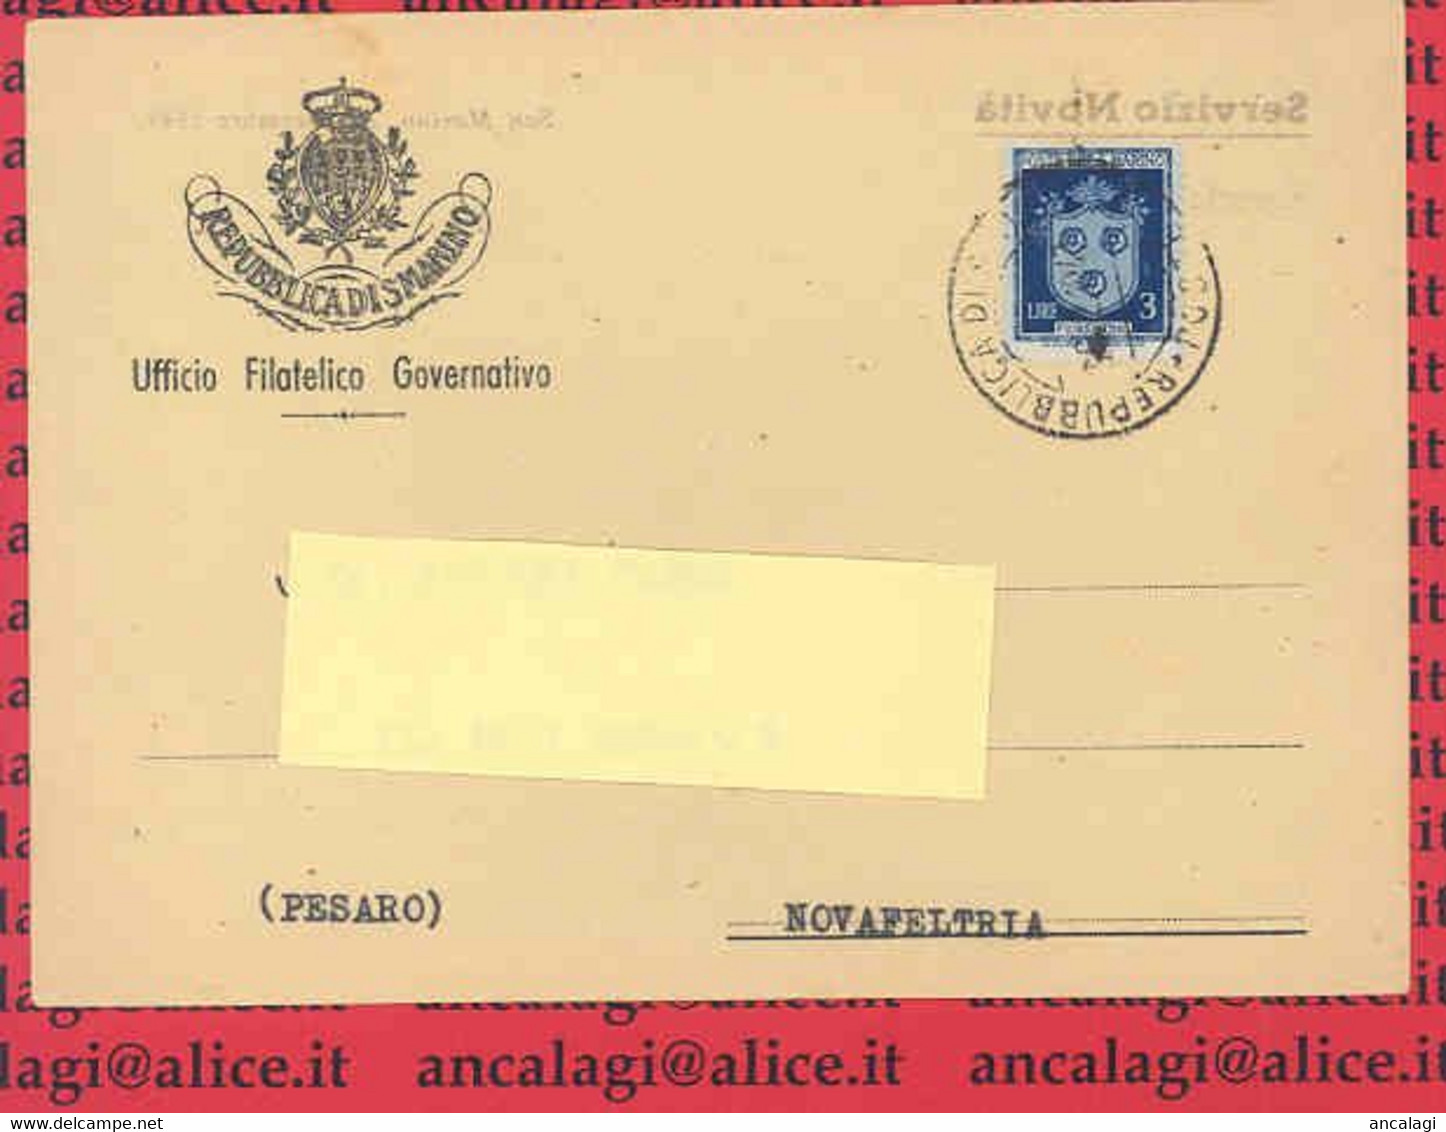 SAN MARINO 1947 - St.Post.003 - Cart. Servizio Novità, L.3 "STEMMI" - Vedi Descizione - - Lettres & Documents